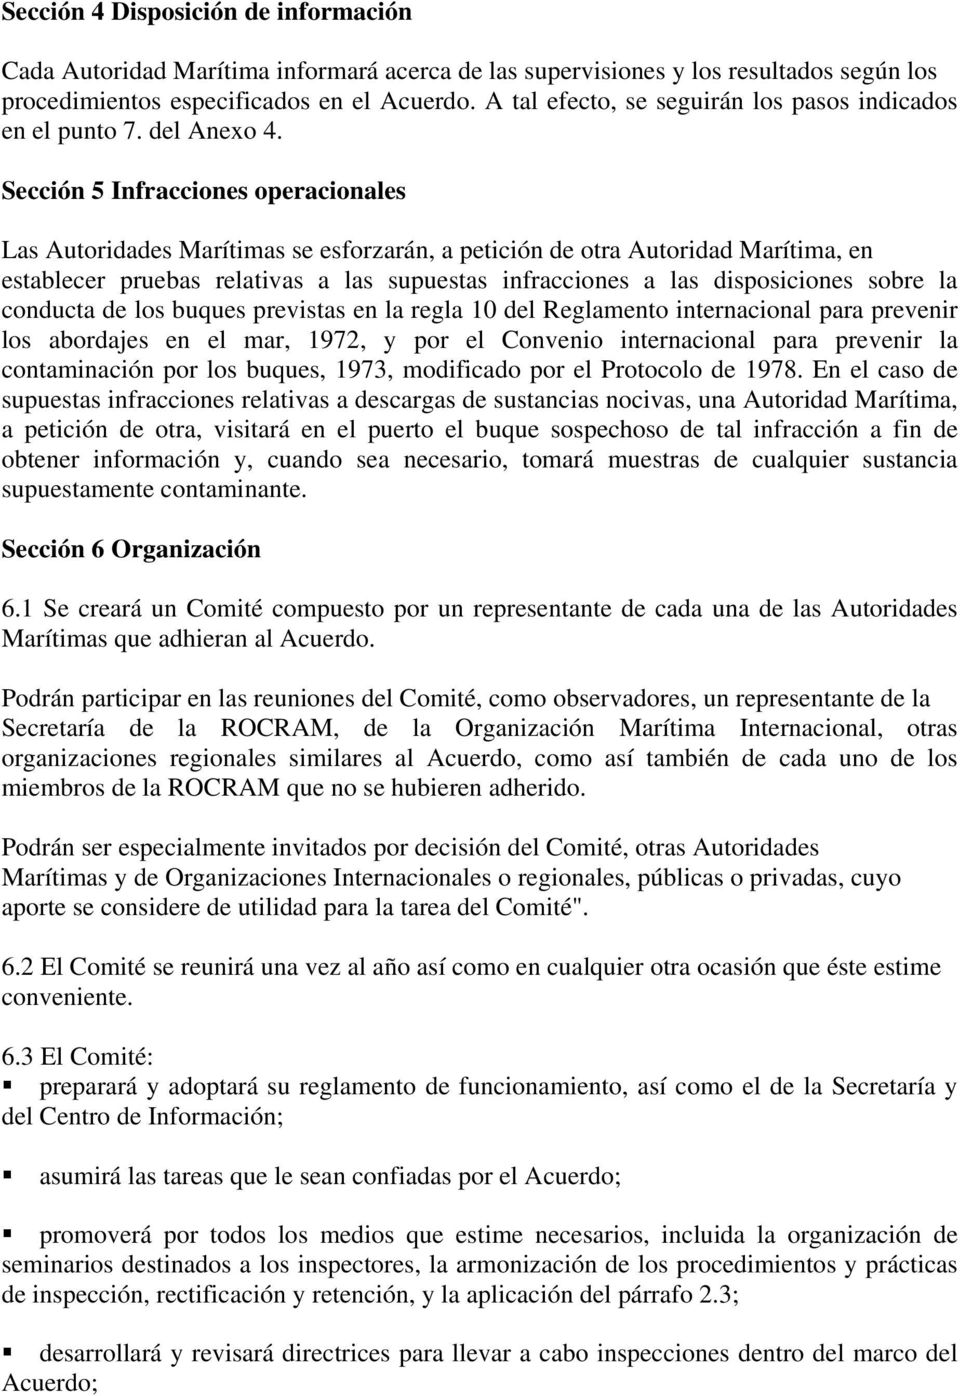 Sección 5 Infracciones operacionales Las Autoridades Marítimas se esforzarán, a petición de otra Autoridad Marítima, en establecer pruebas relativas a las supuestas infracciones a las disposiciones